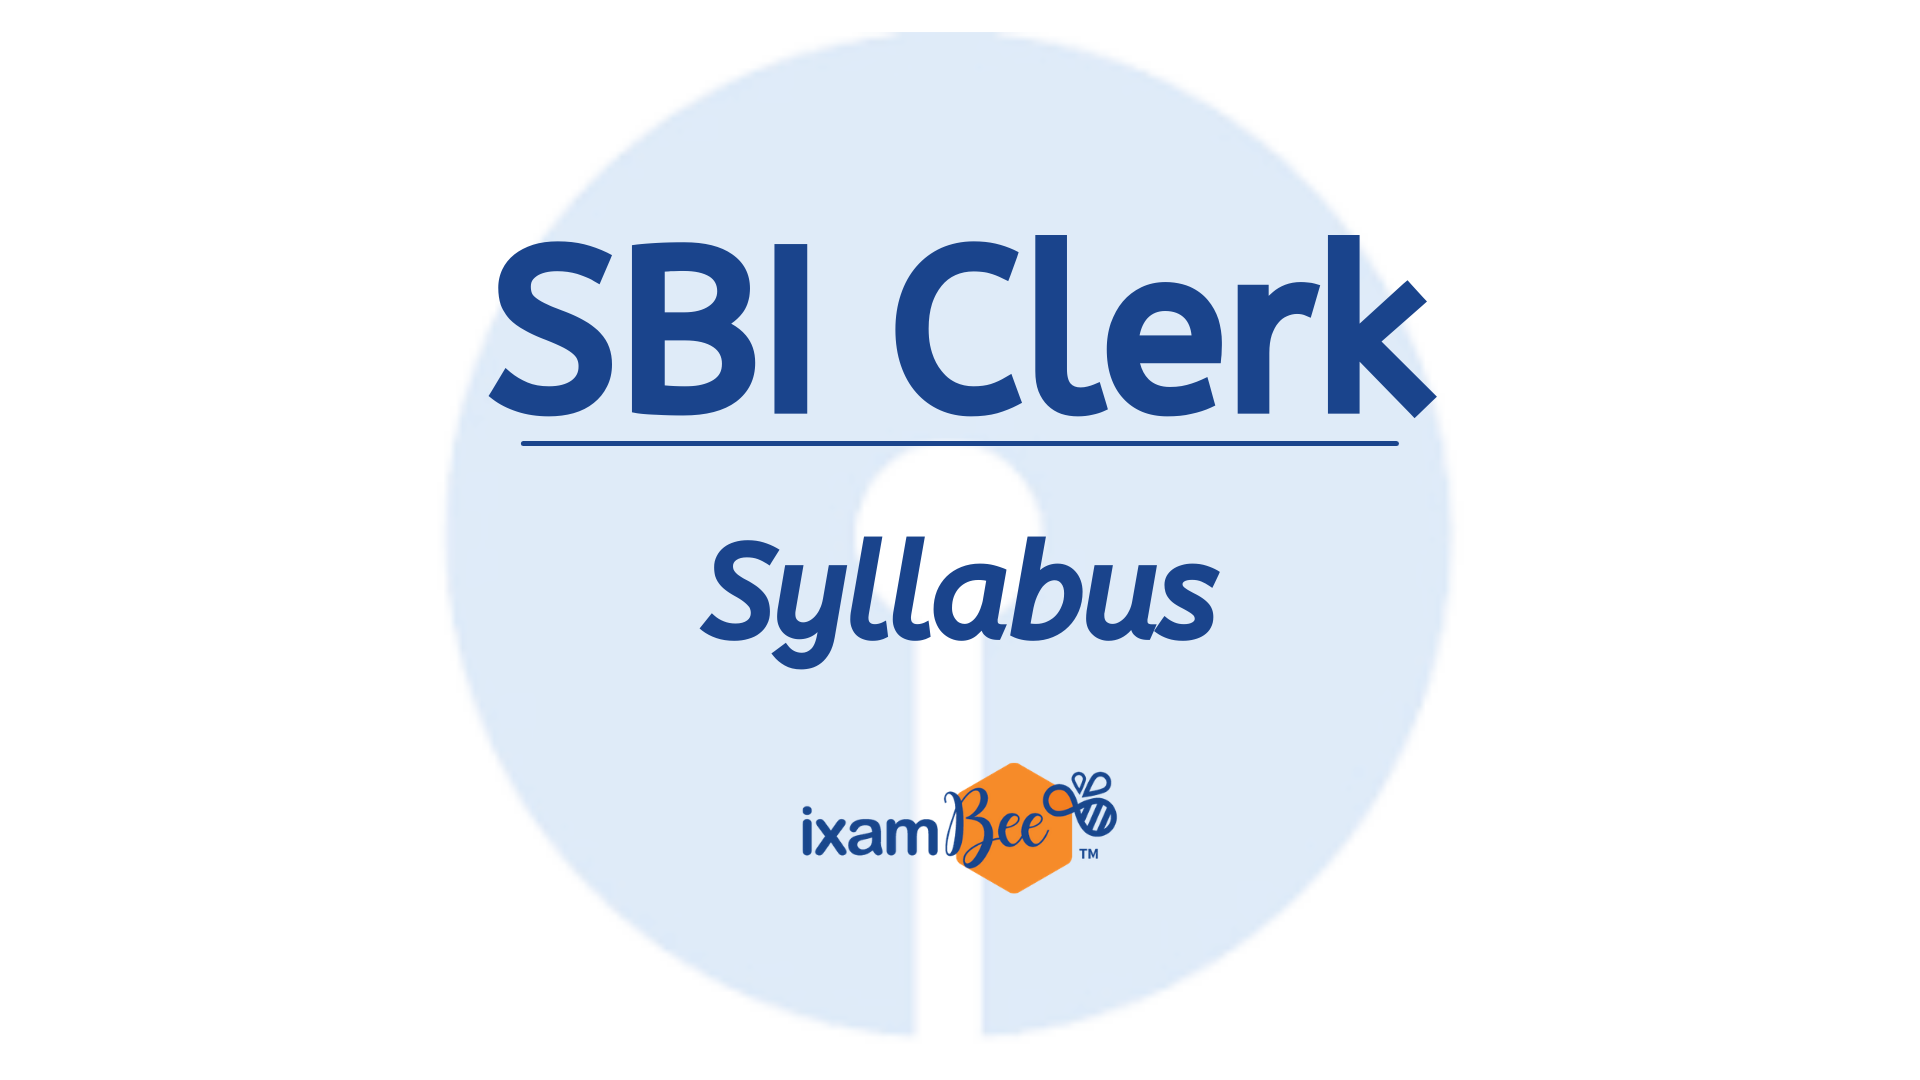 SBI Clerk syllabus 2021